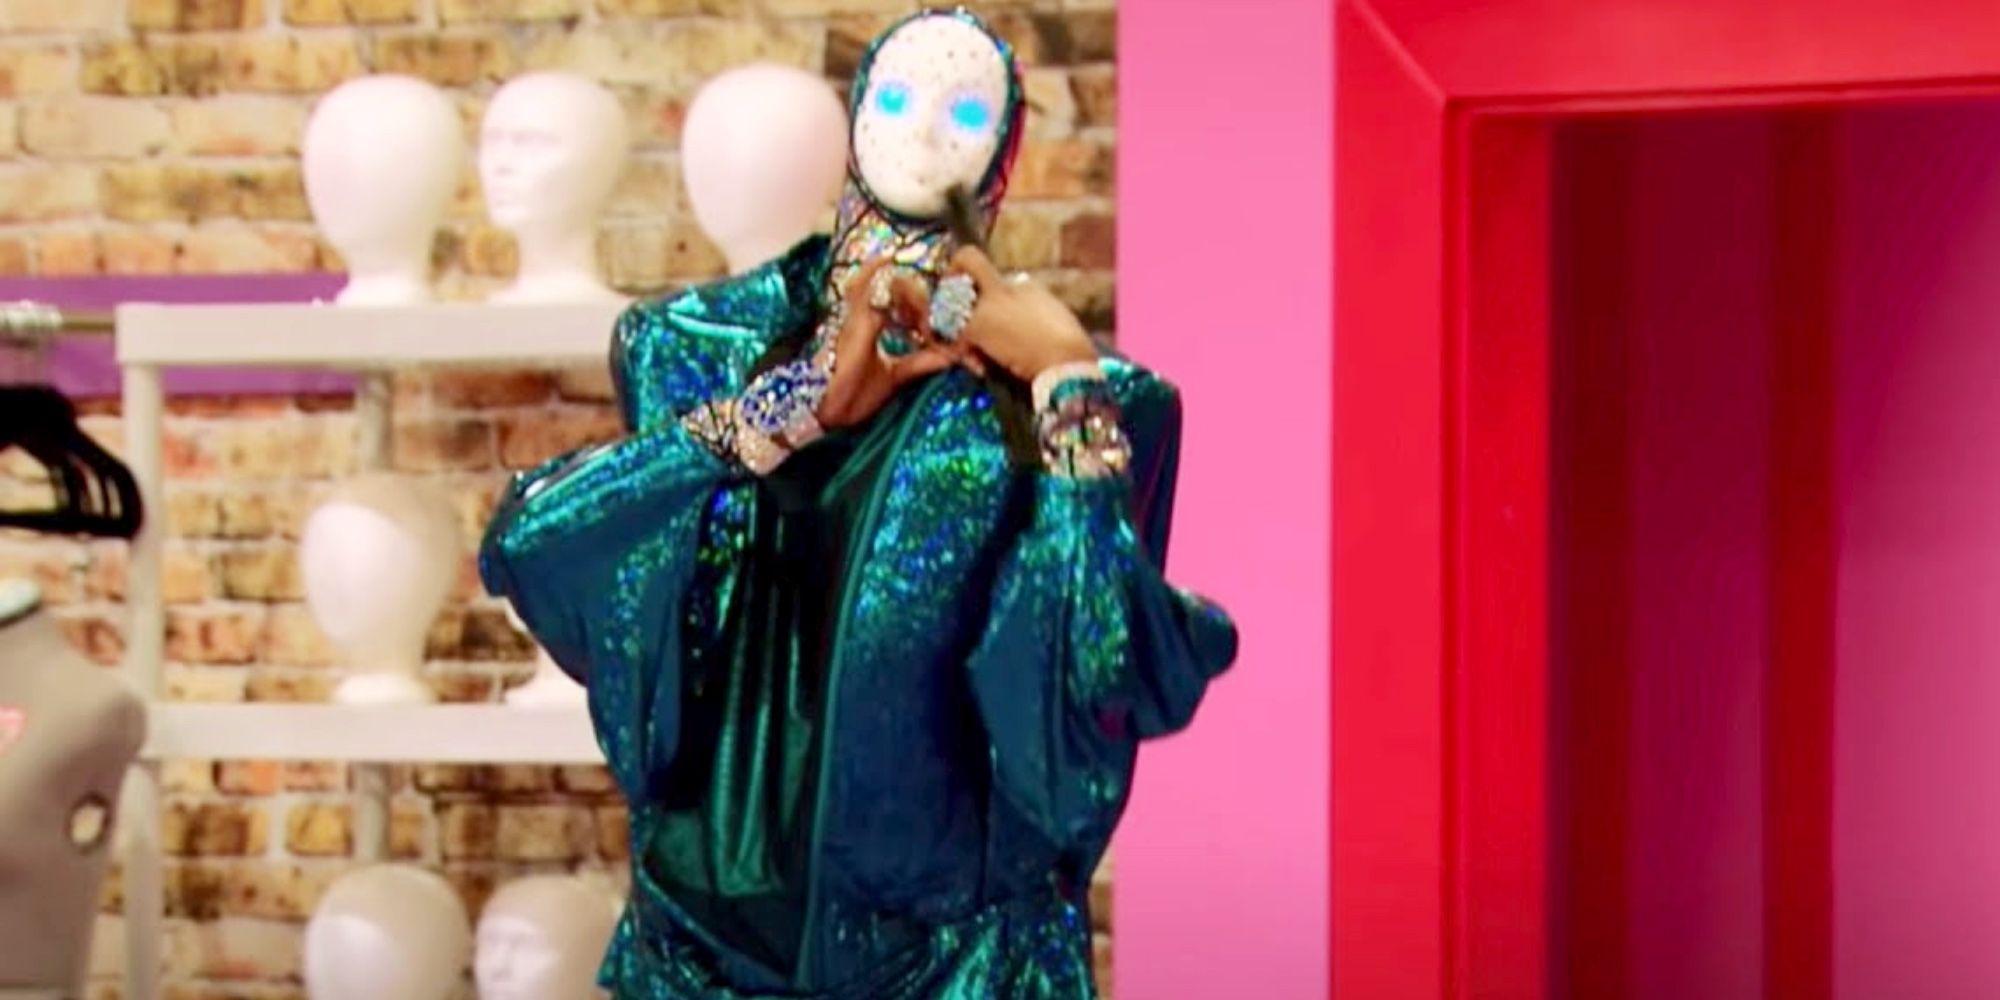 Drag queen Vivacious enters the Werk Room on RuPaul's Drag Race season 6